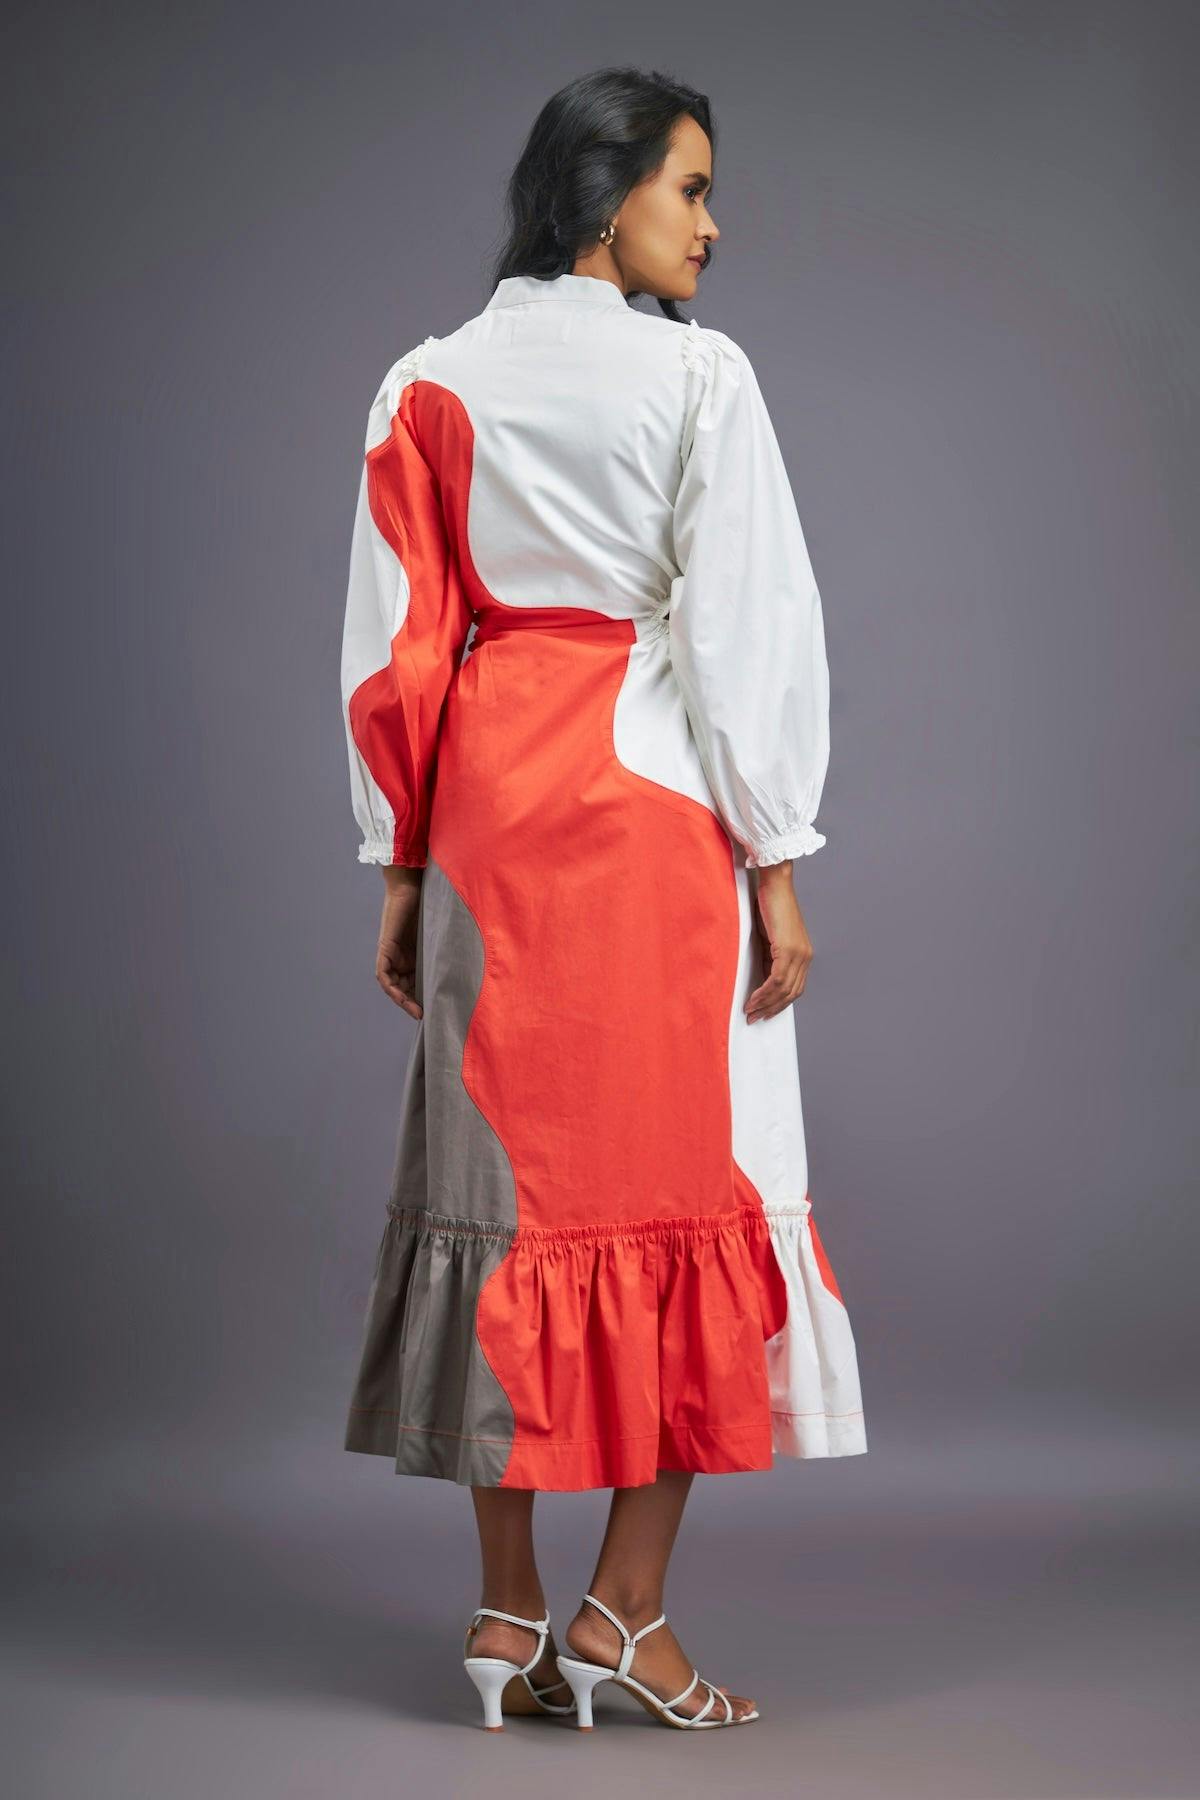 Thumbnail preview #1 for BB-1107-OG - White Orange Maxi Shirt Dress